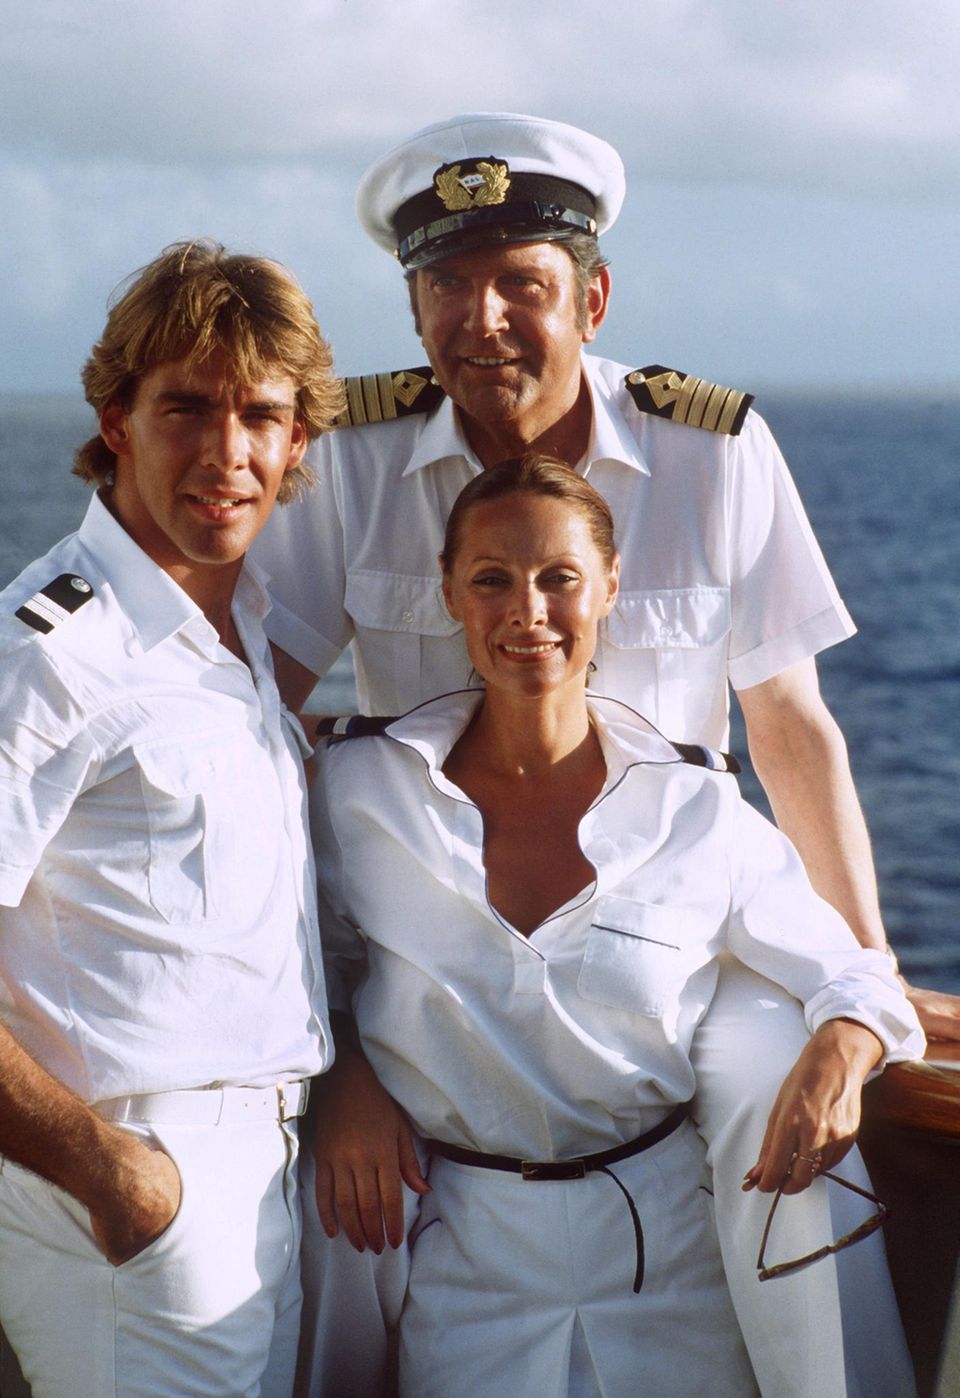 Im Herbst 1981 wurde die erste Folge des "Traumschiffs" im ZDF ausgestrahlt. Damals bestand die Crew noch aus Sascha Hehn als Stewart Victor, Heide Keller als Hostess Beatrice. Gesteuert wurde das Passagierschiff von Günter König als Kapitän Braake